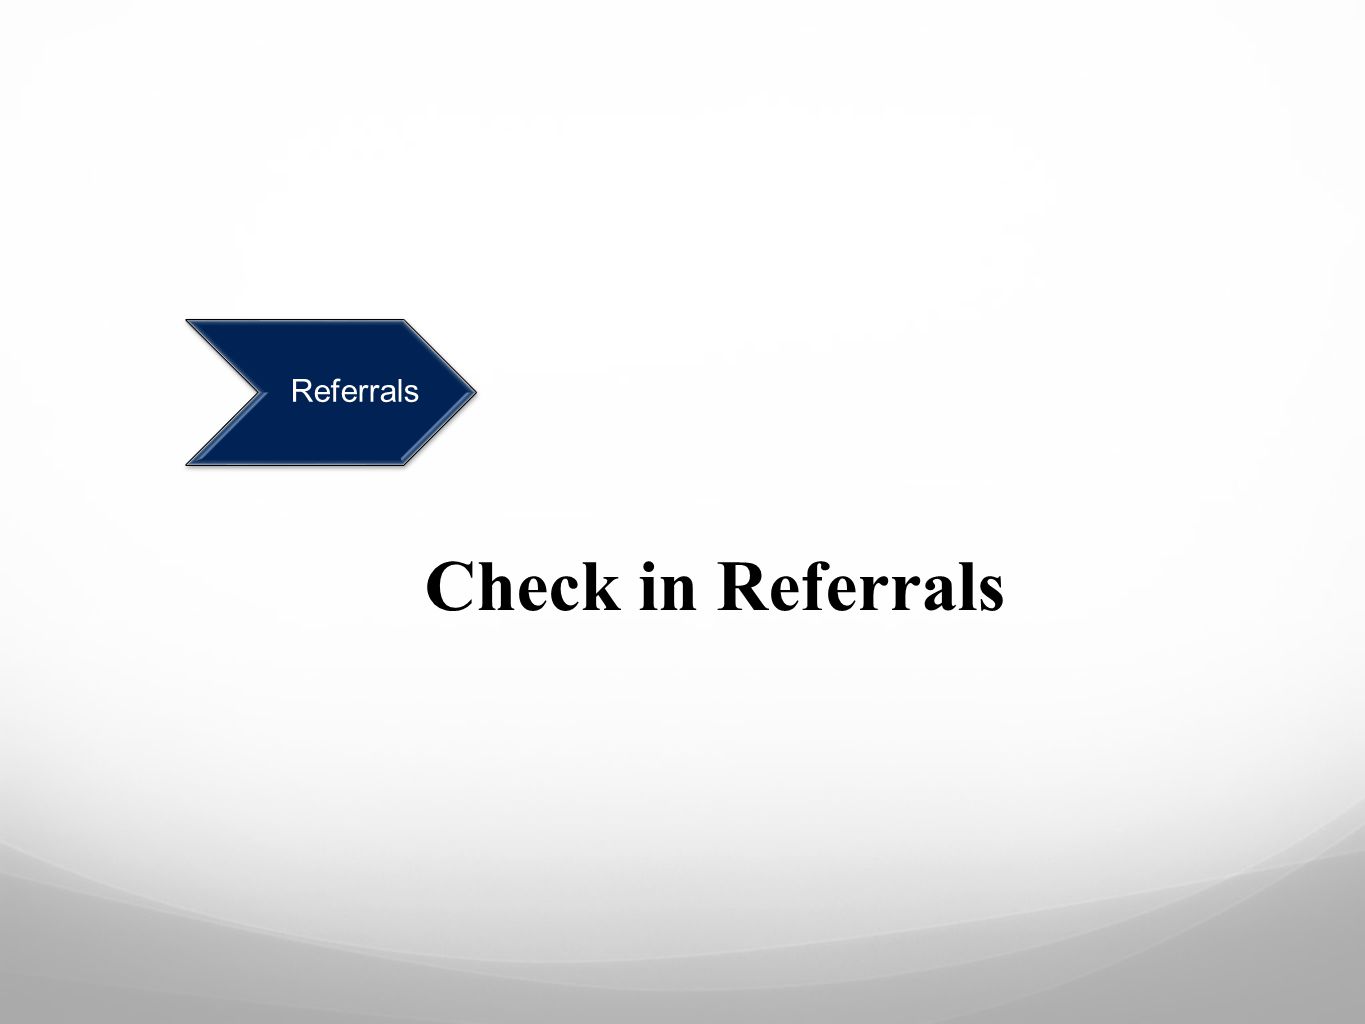 Referrals Check in Referrals